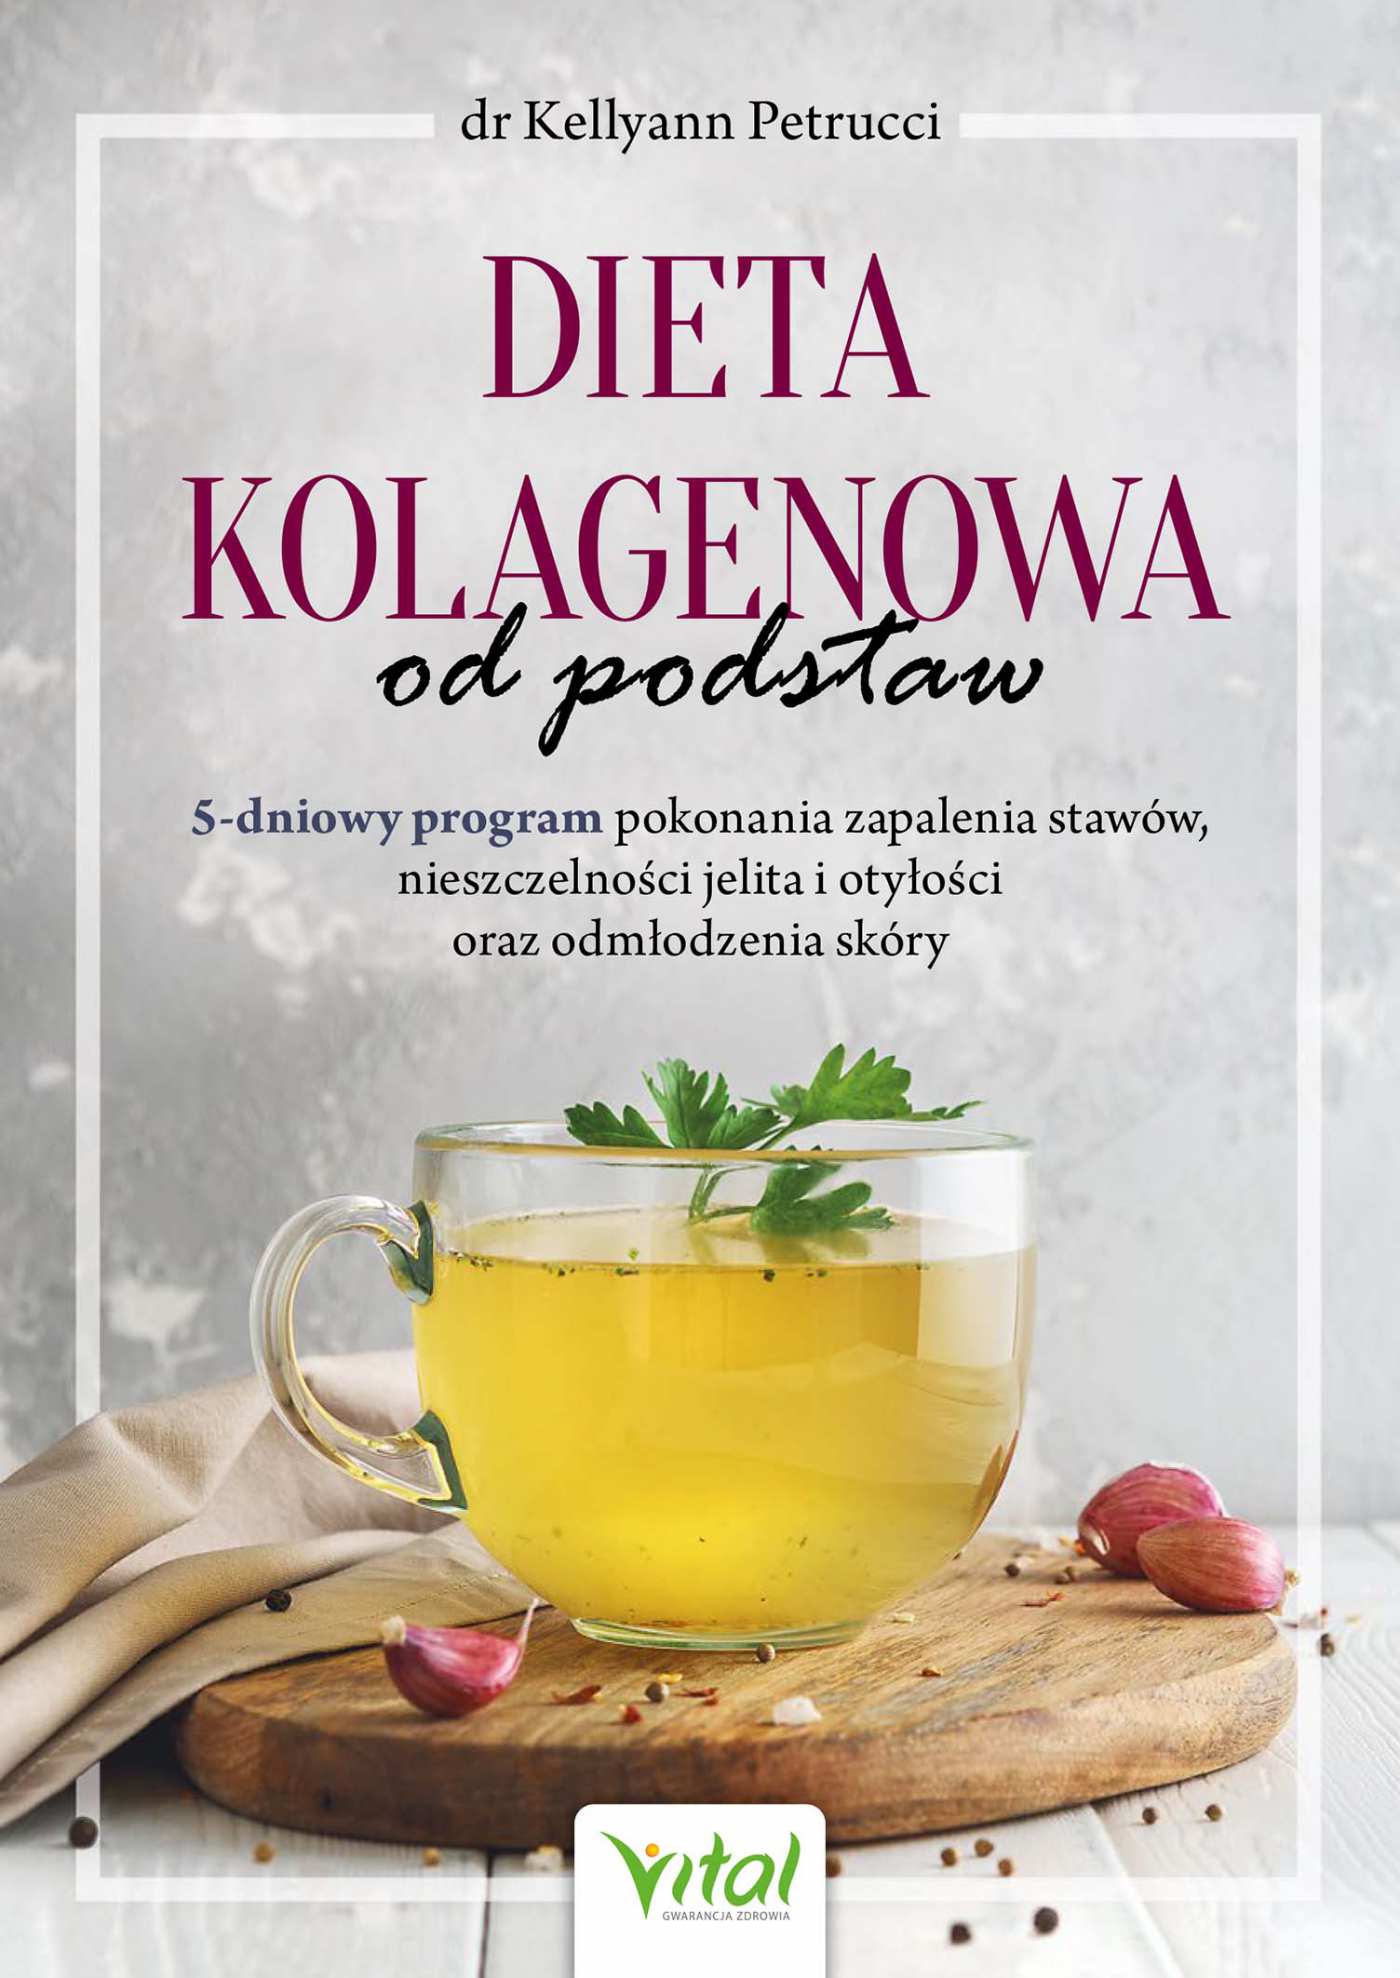 Dieta kolagenowa od podstaw sklep muve.pl